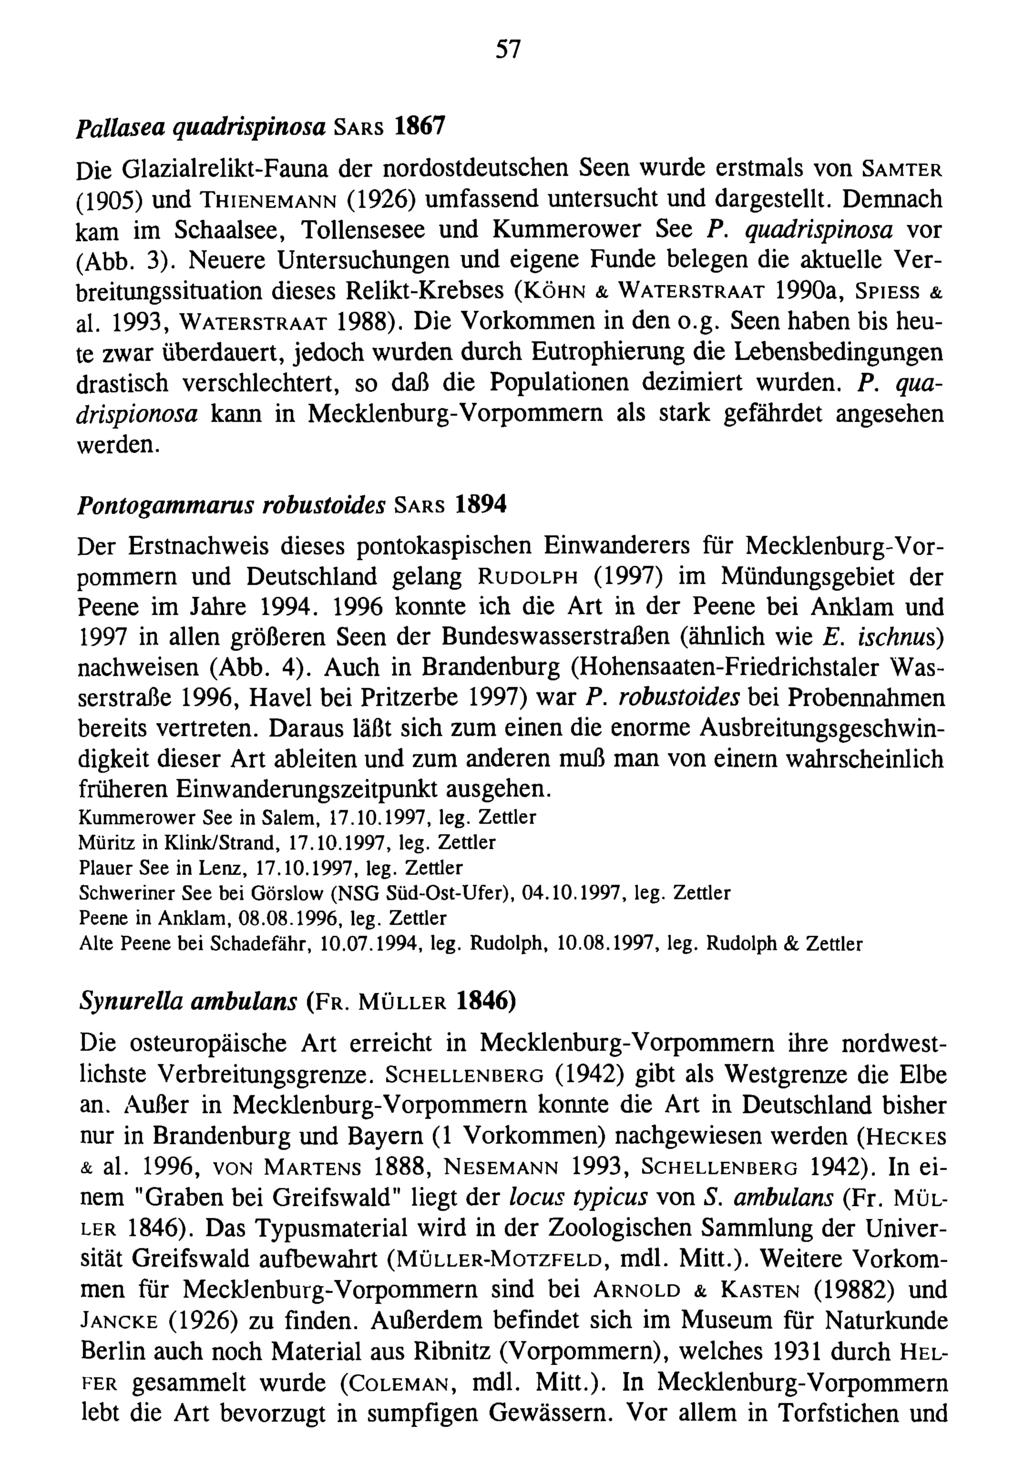 57 Pallasea quadrispinosa S a r s 1867 Die Glazialrelikt-Fauna der nordostdeutschen Seen wurde erstmals von S a m t e r (1905) und T h ie n e m a n n (1926) umfassend untersucht und dargestellt.